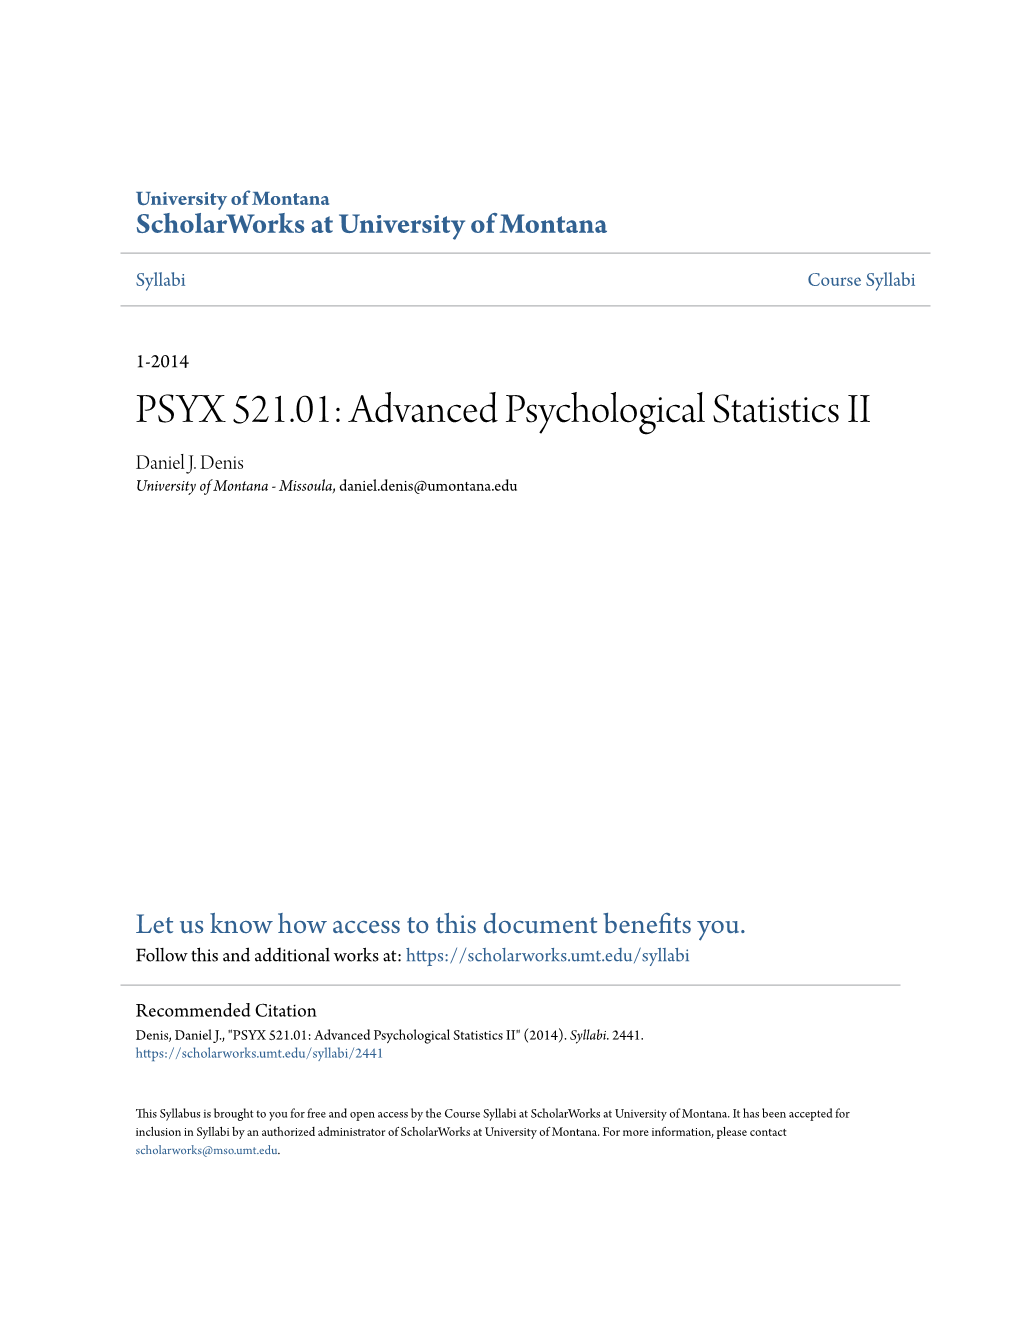 PSYX 521.01: Advanced Psychological Statistics II Daniel J